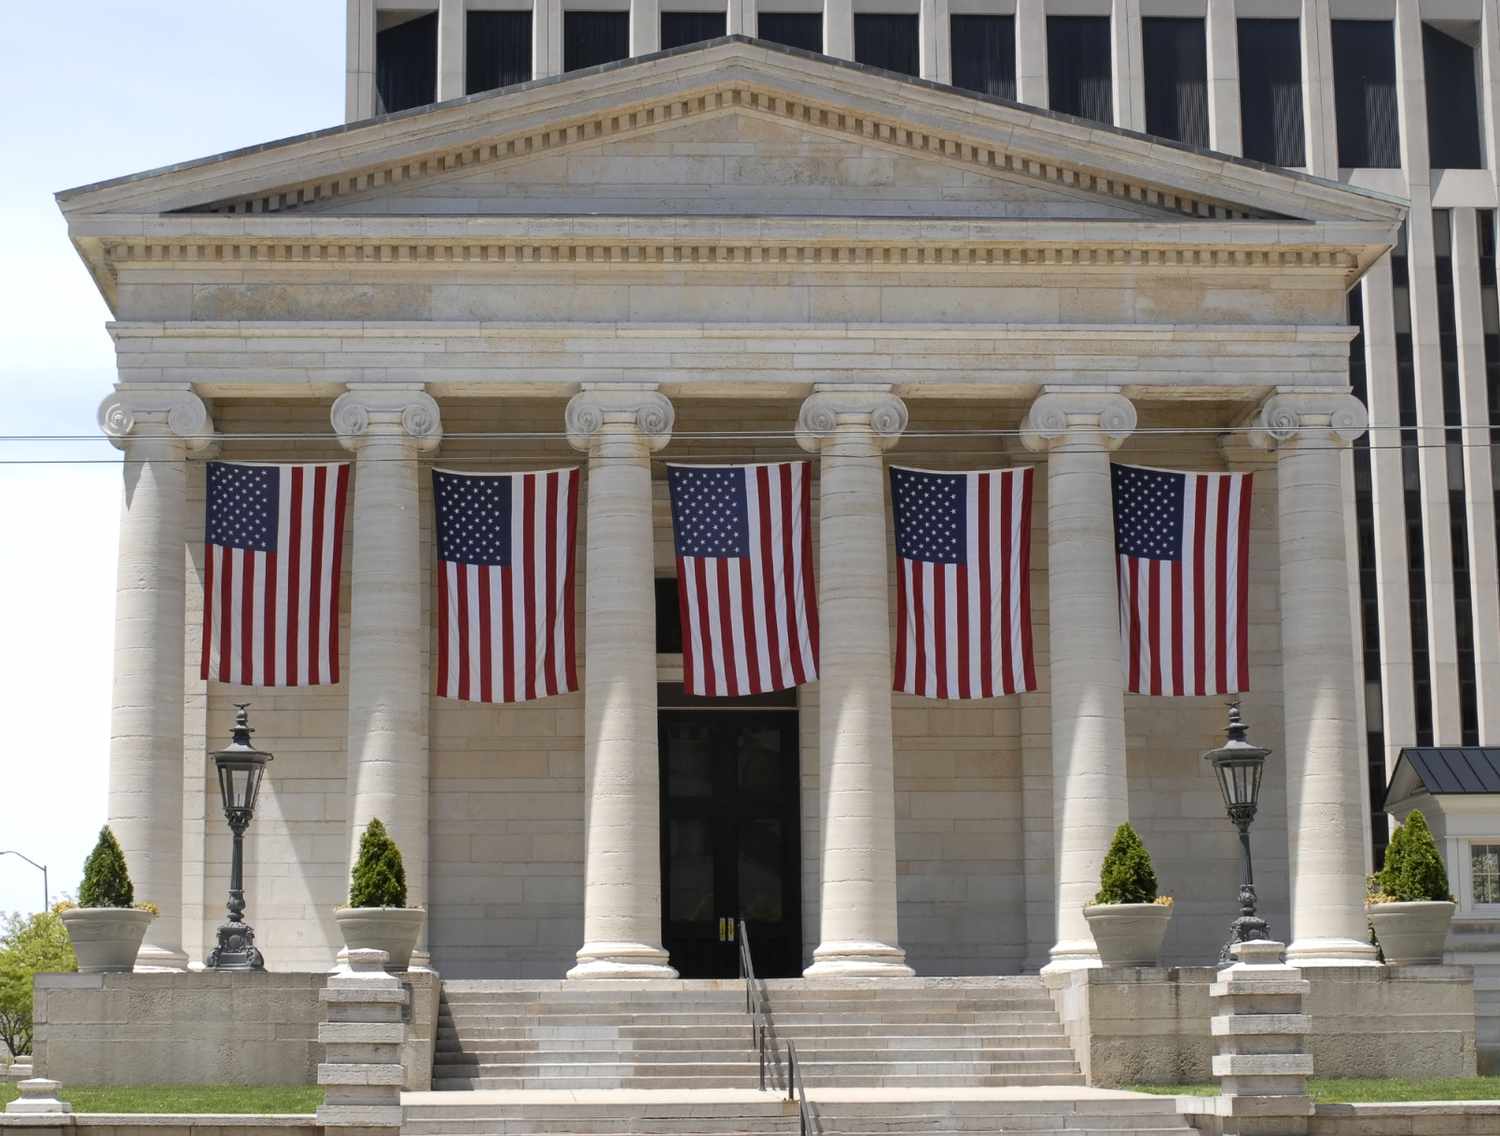 Greek Revival Gerichtsgebäude mit amerikanischen Flaggen.